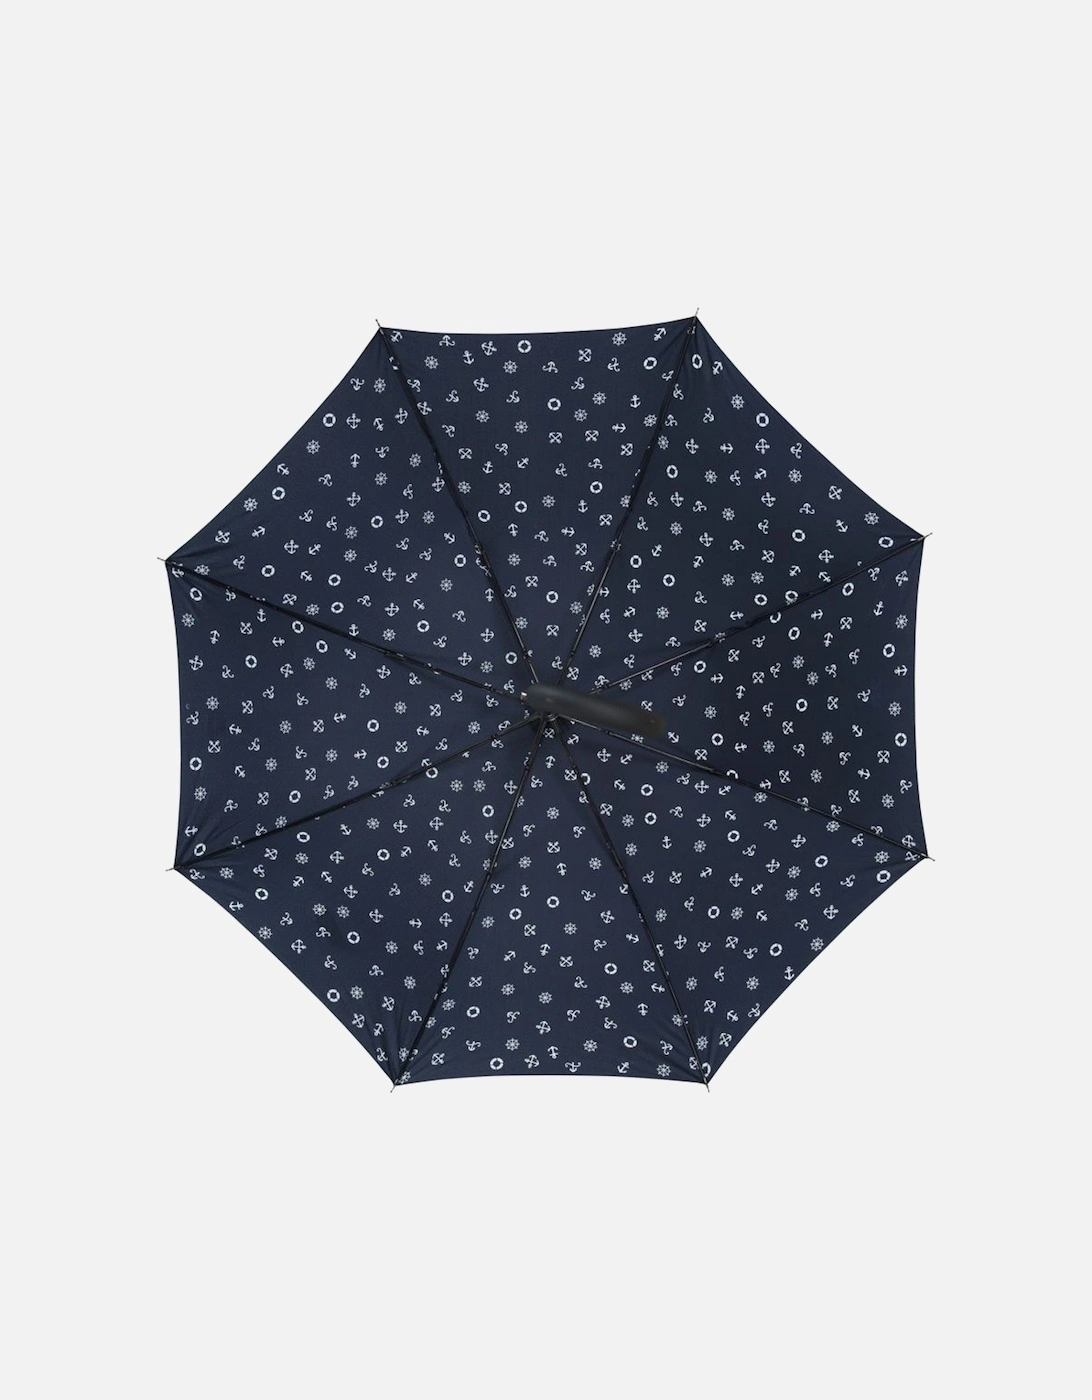 Rainstorm Folding Umbrella